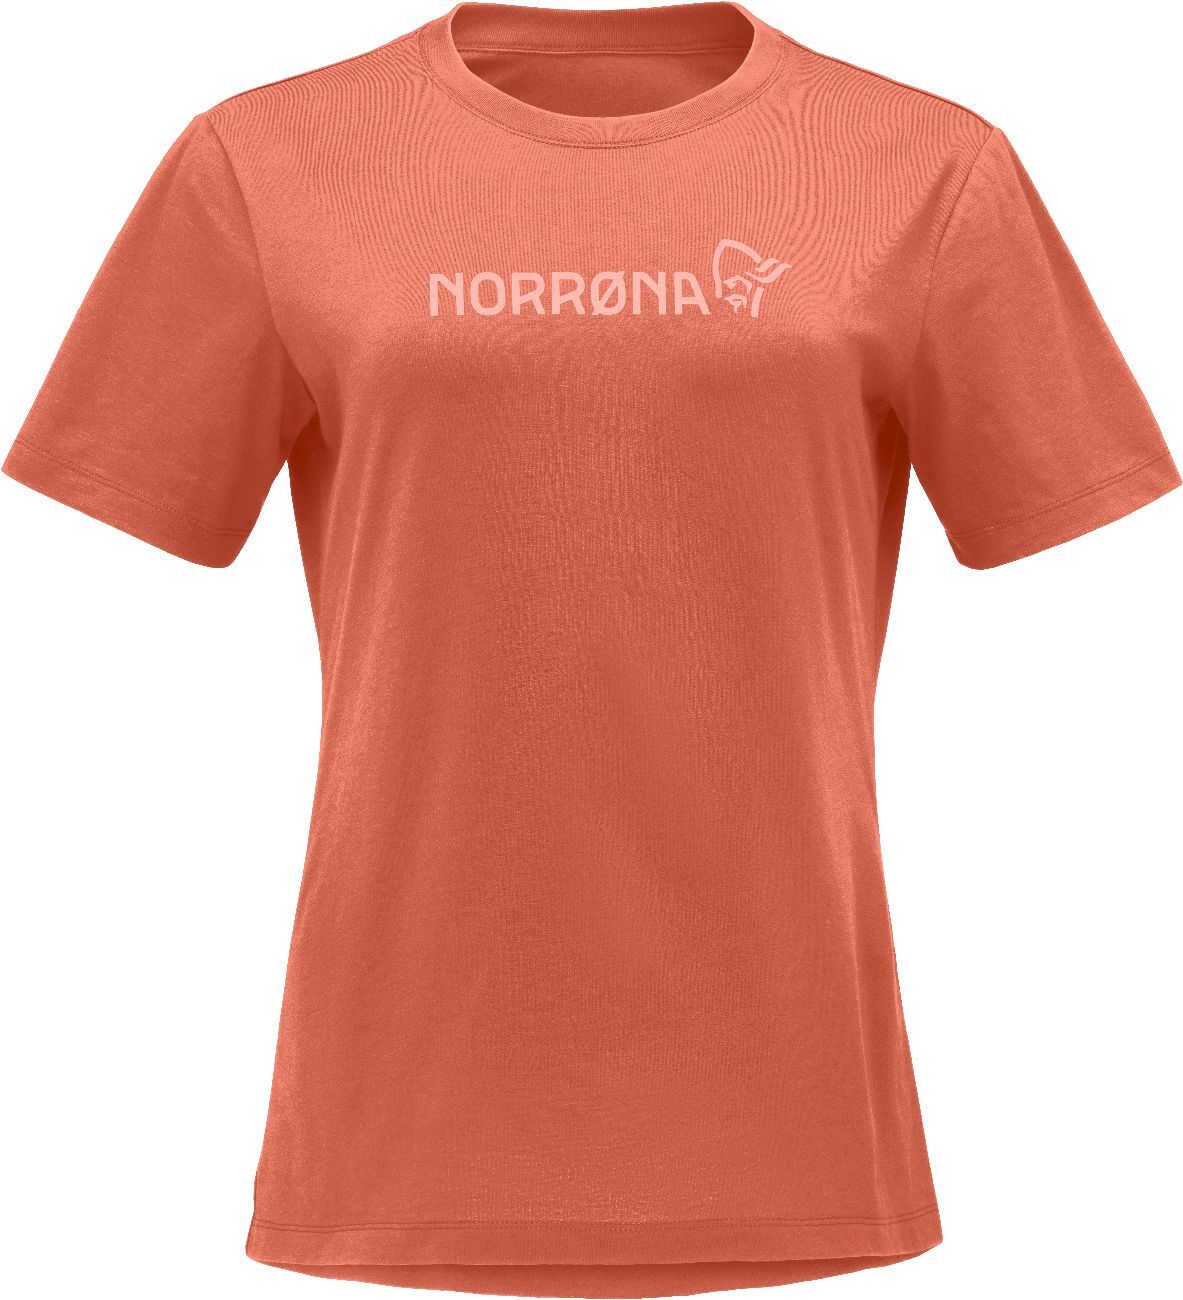 Norrona /29 Cotton Norrona Viking - Camiseta - Mujer